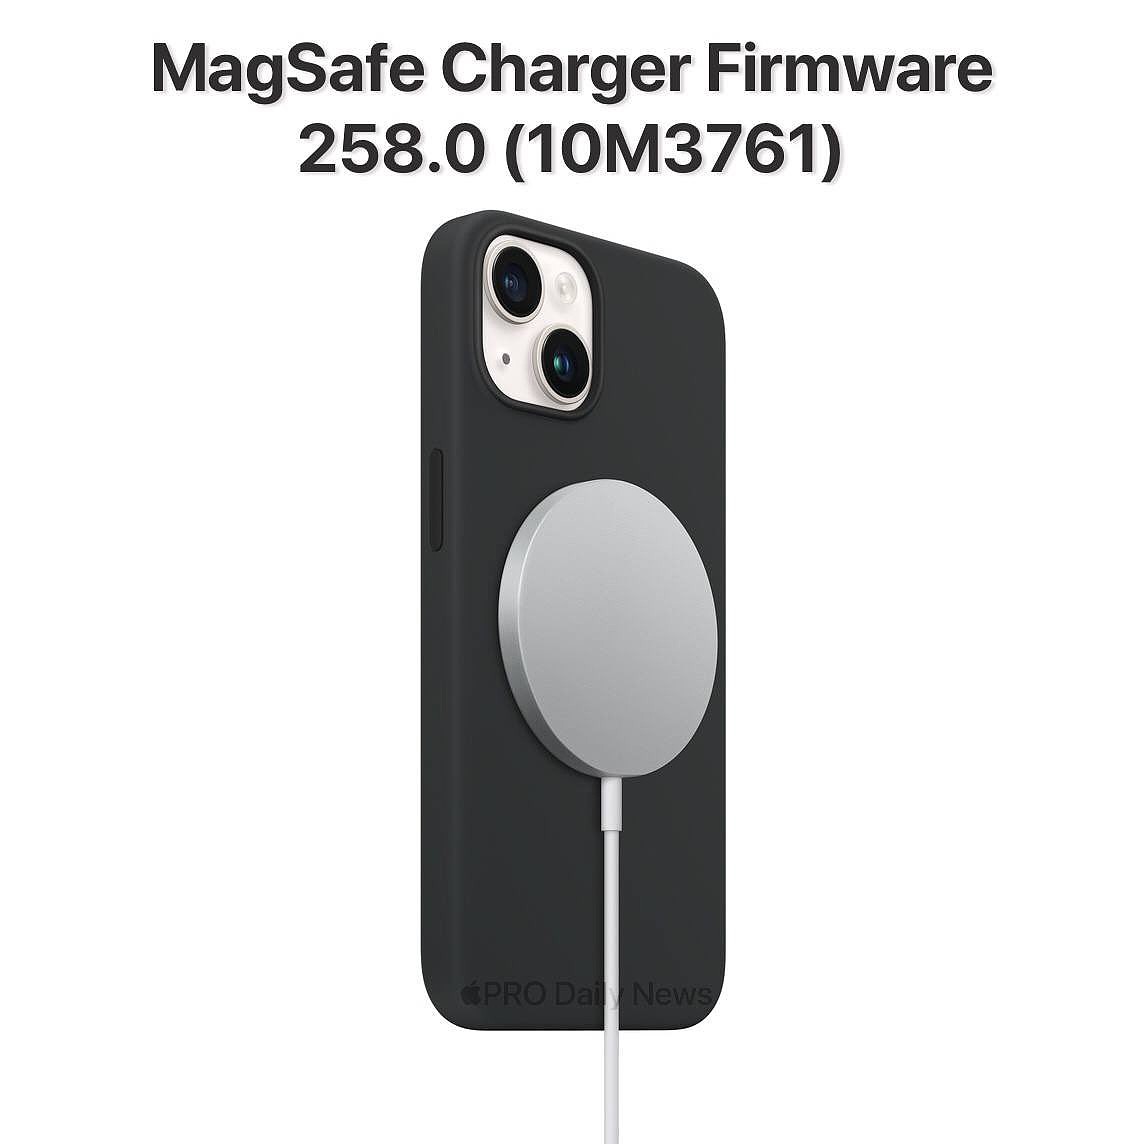 第 4 次更新，苹果为 MagSafe 充电器发布 10M3761 固件 - 1